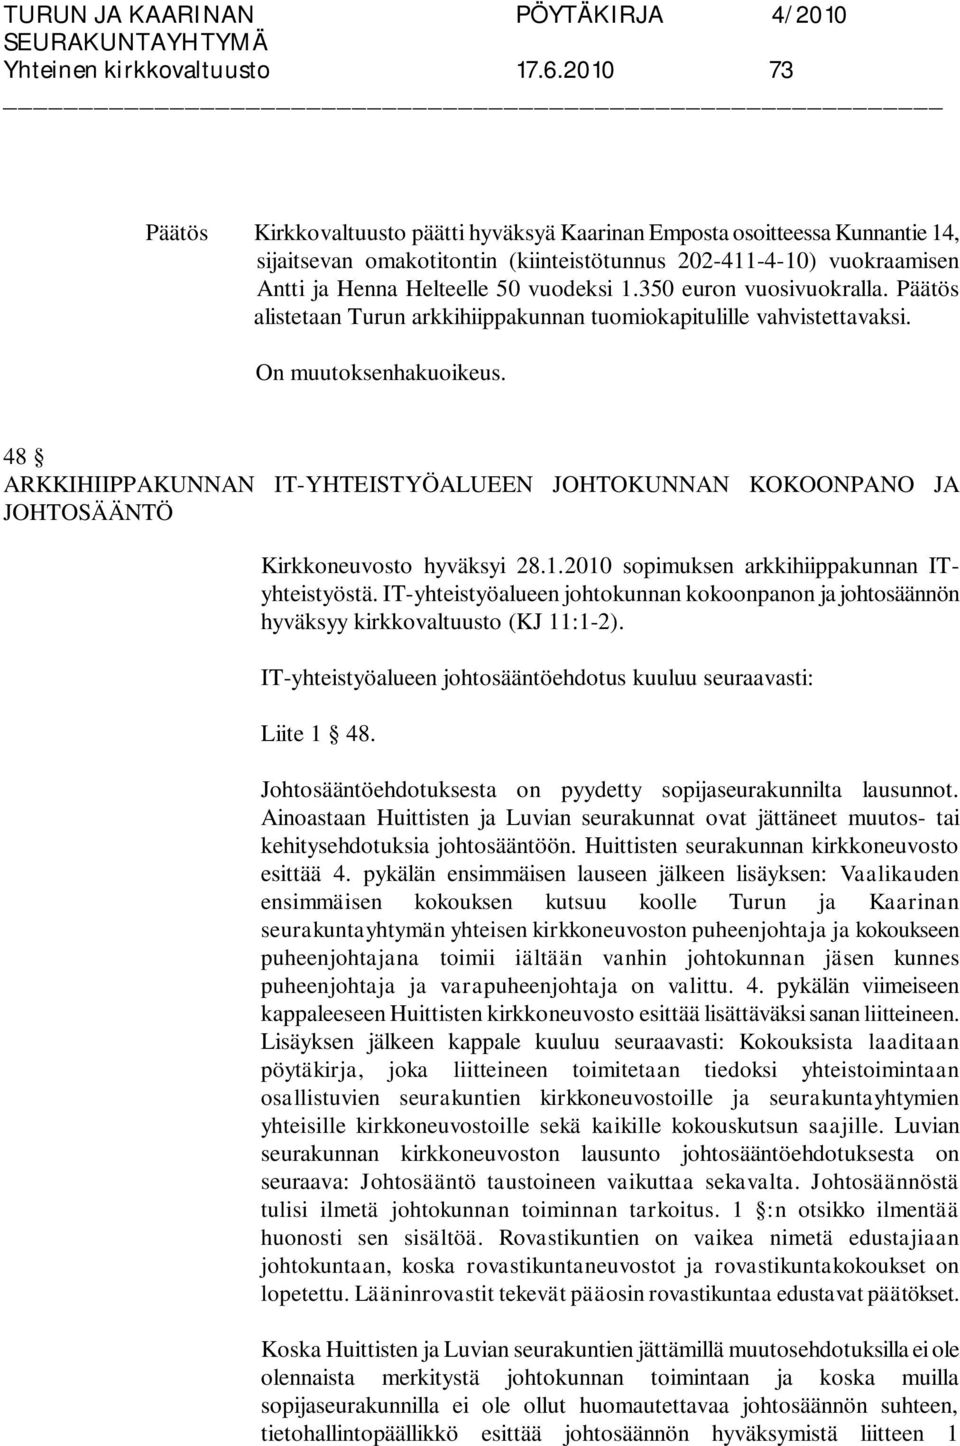 350 euron vuosivuokralla. alistetaan Turun arkkihiippakunnan tuomiokapitulille vahvistettavaksi.